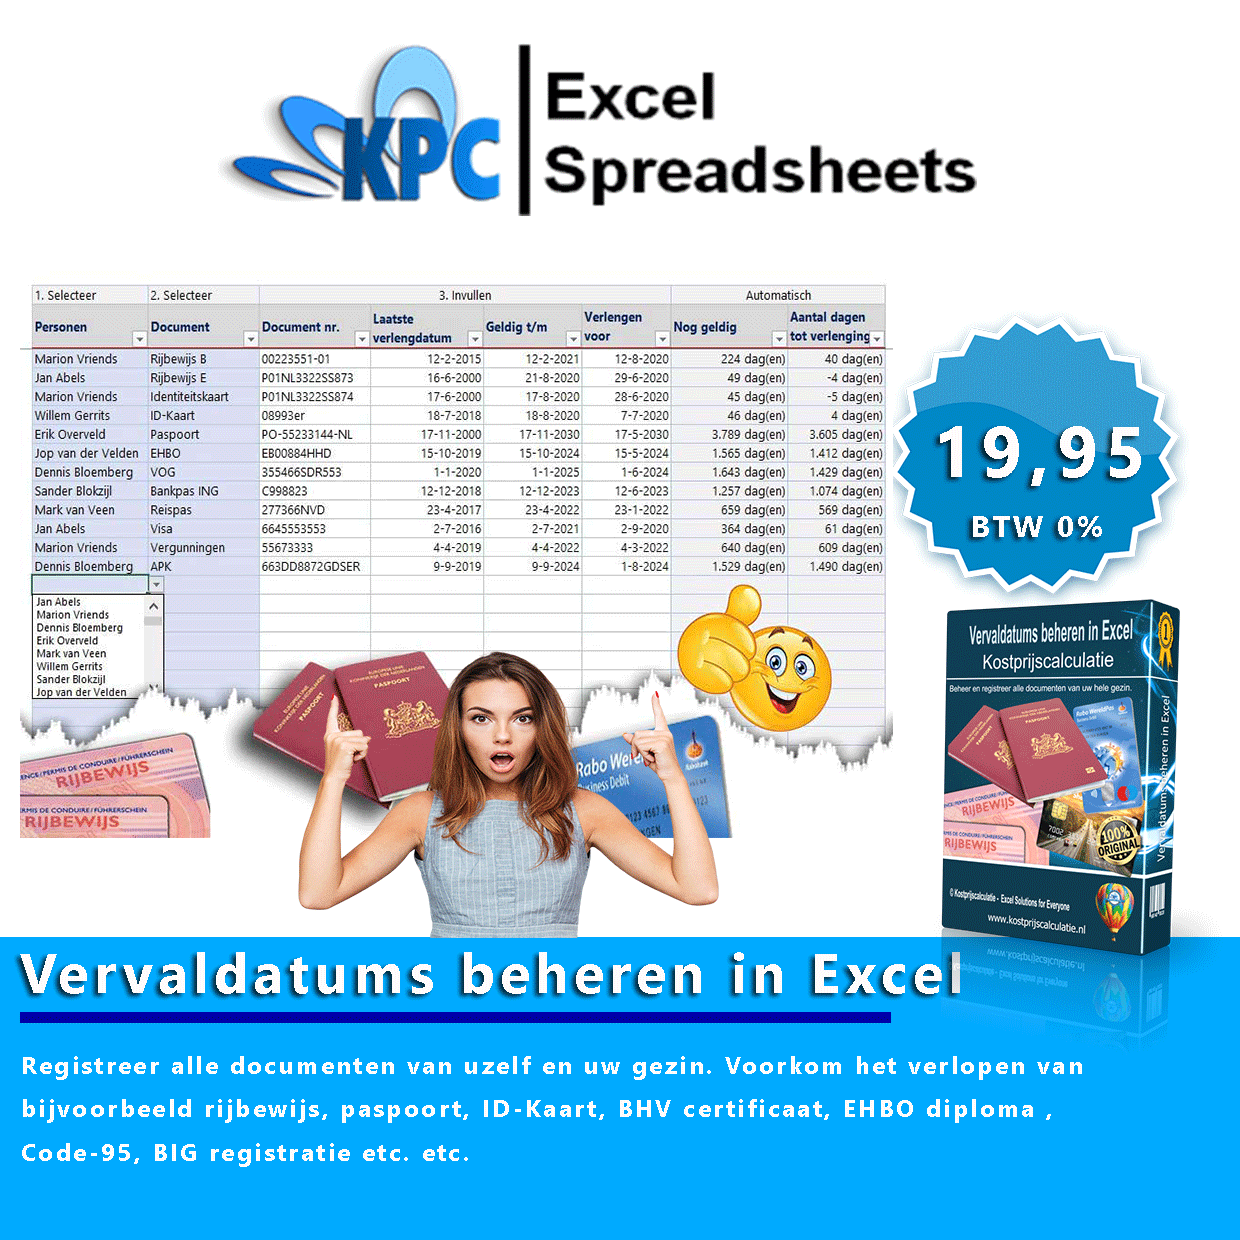 Vervaldatums beheren in Excel